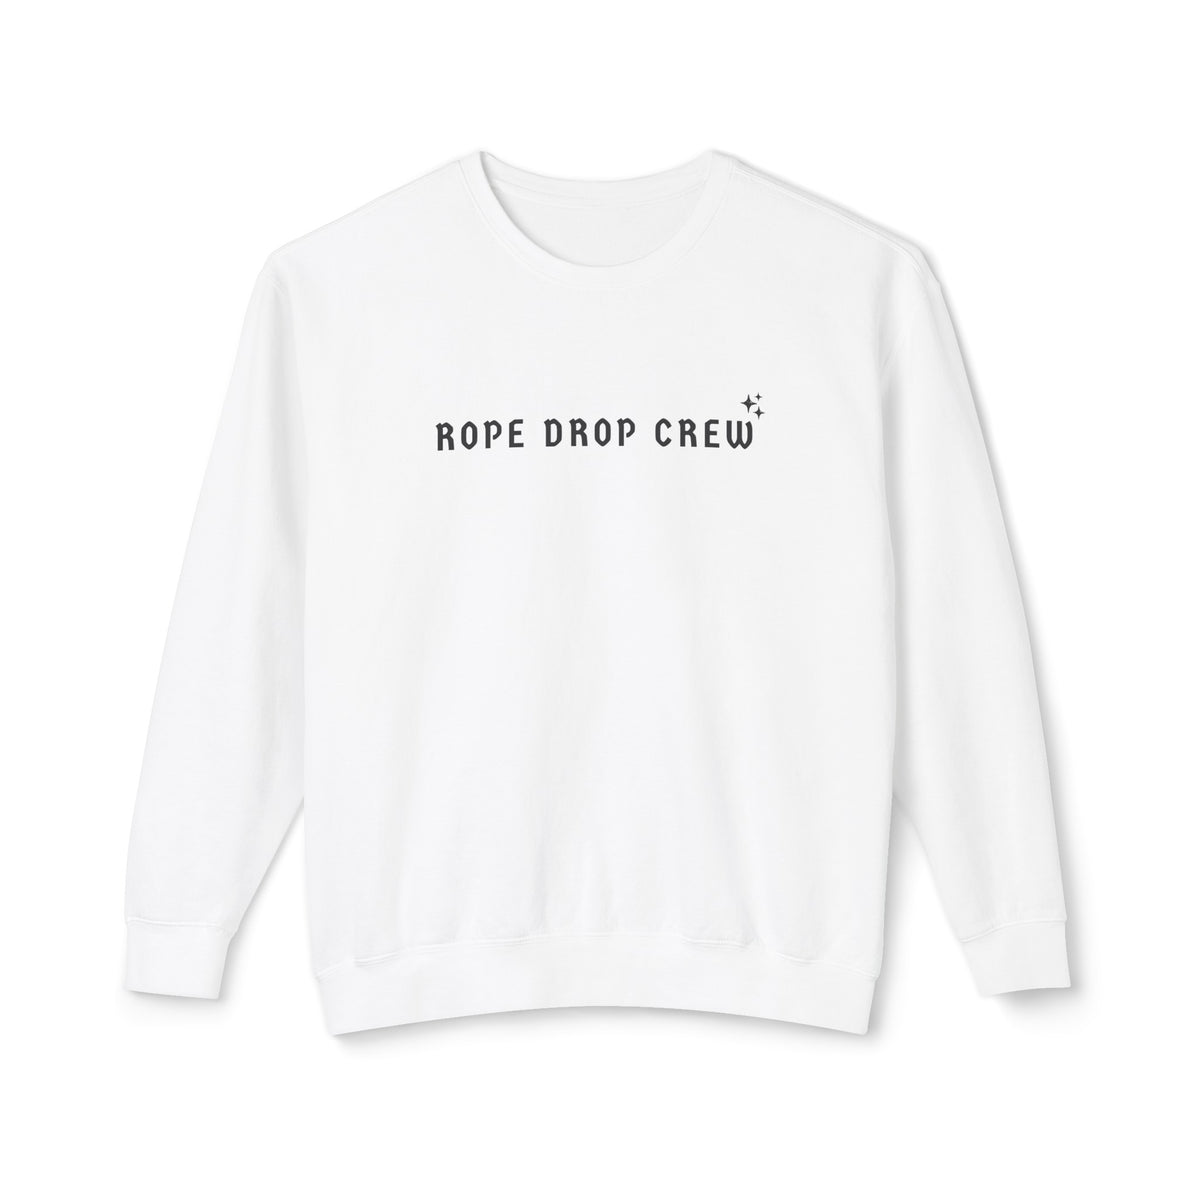 Rope Drop Crew Unisex Lightweight Comfort Colors Crewneck Sweatshirt